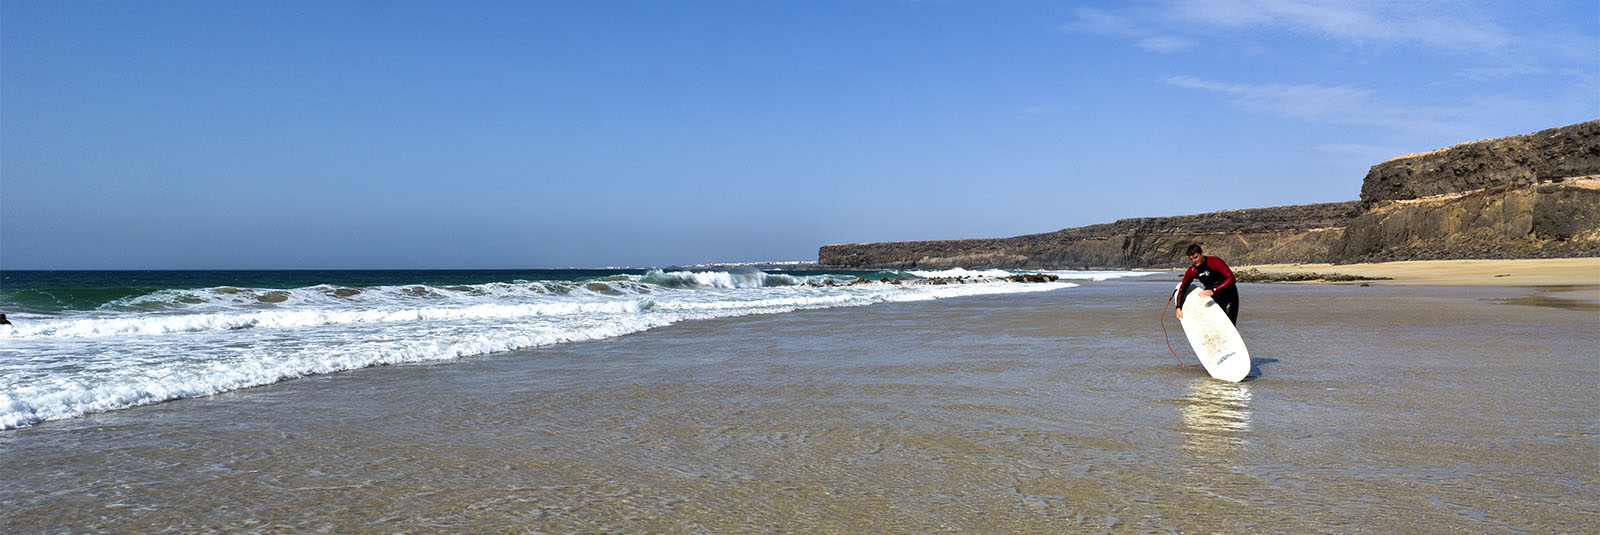 Die Strände Fuerteventuras: Playa del Aquila (Playa Escalera)